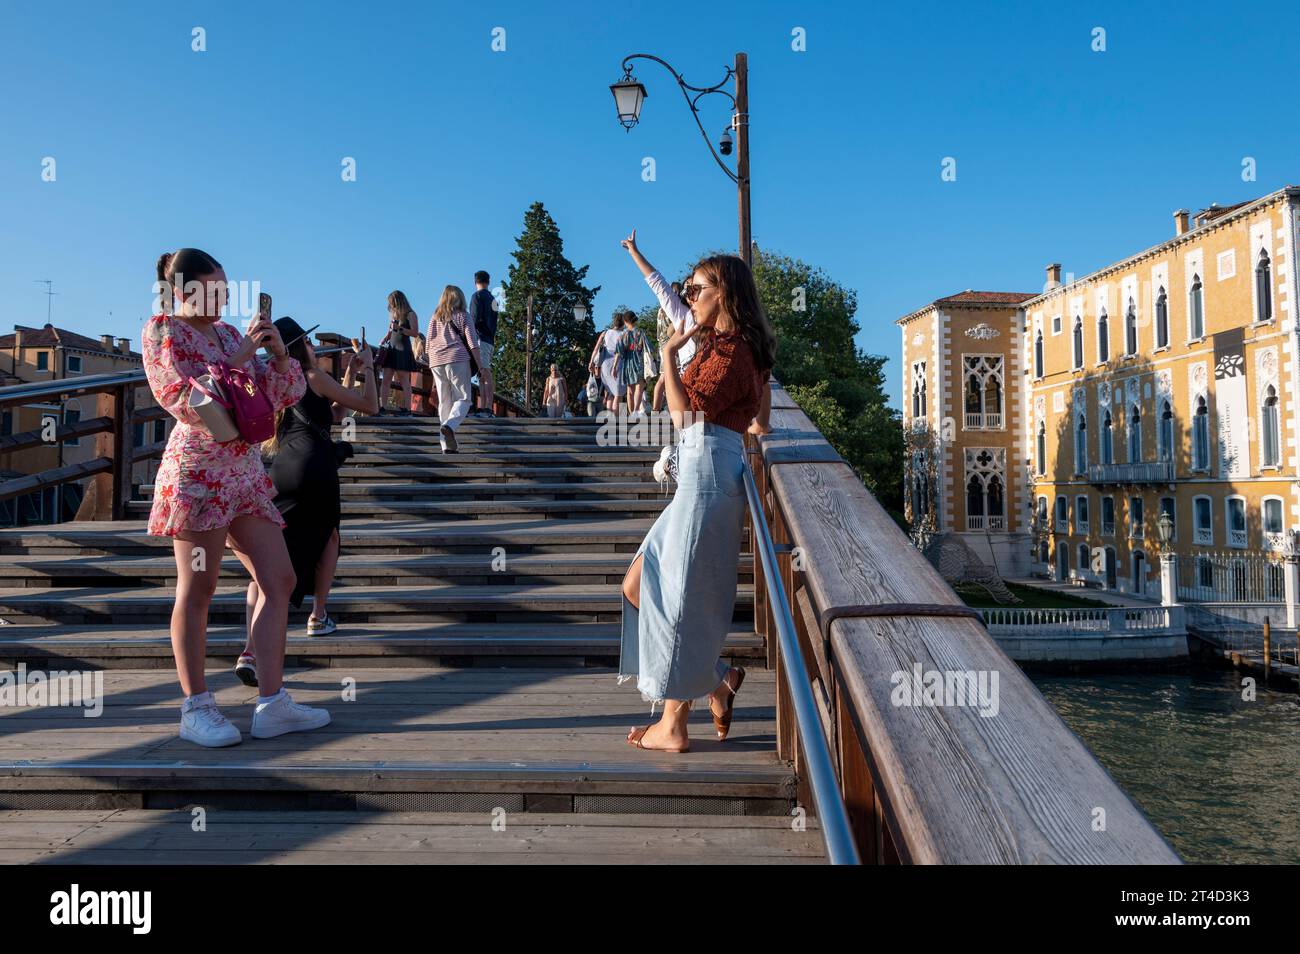 Prendre des selfies semble être un passe-temps favori, en particulier avec les jeunes touristes à Venise dans la région vénitienne du nord de l'Italie. Banque D'Images